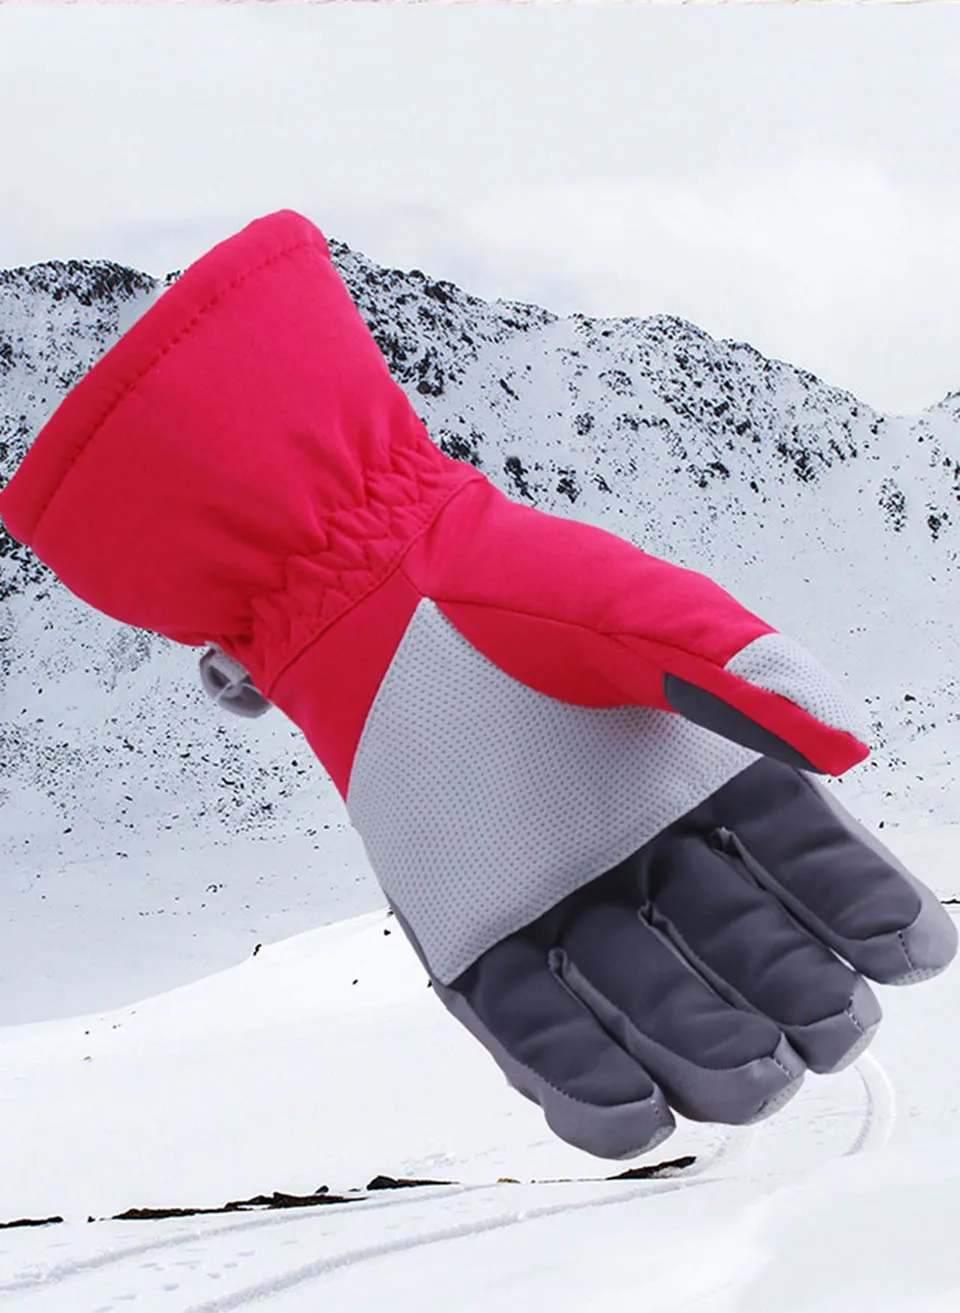 MARSNOW зимние уличные водонепроницаемые теплые перчатки для катания на лыжах для мужчин, женщин и детей, для альпинизма, сноубординга, спортивные хлопковые перчатки-30 градусов